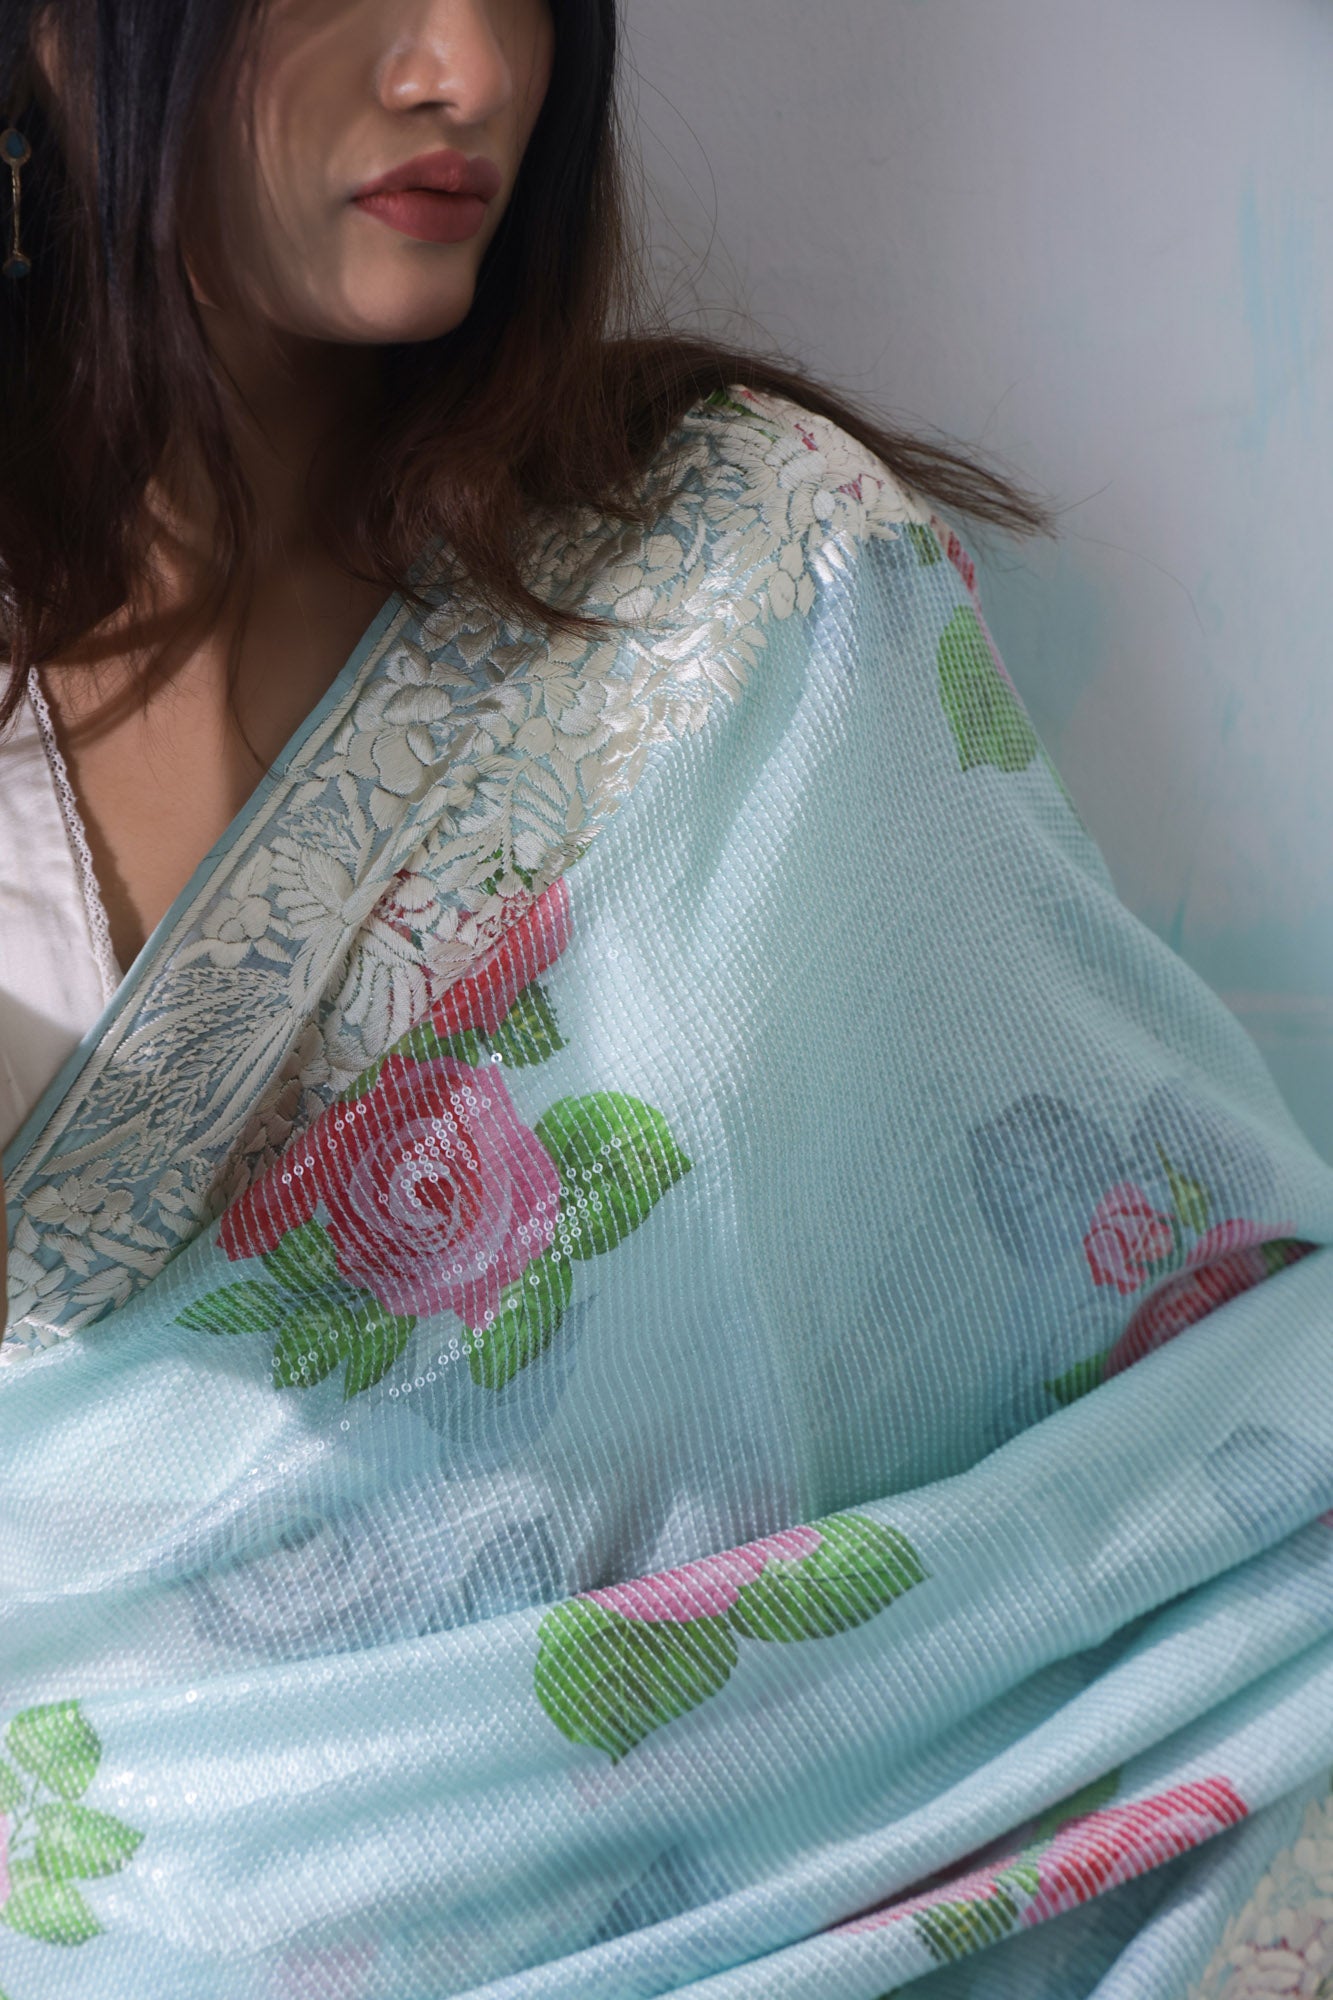 VARUNA - Designer Floral Sequin Embroidered Sari